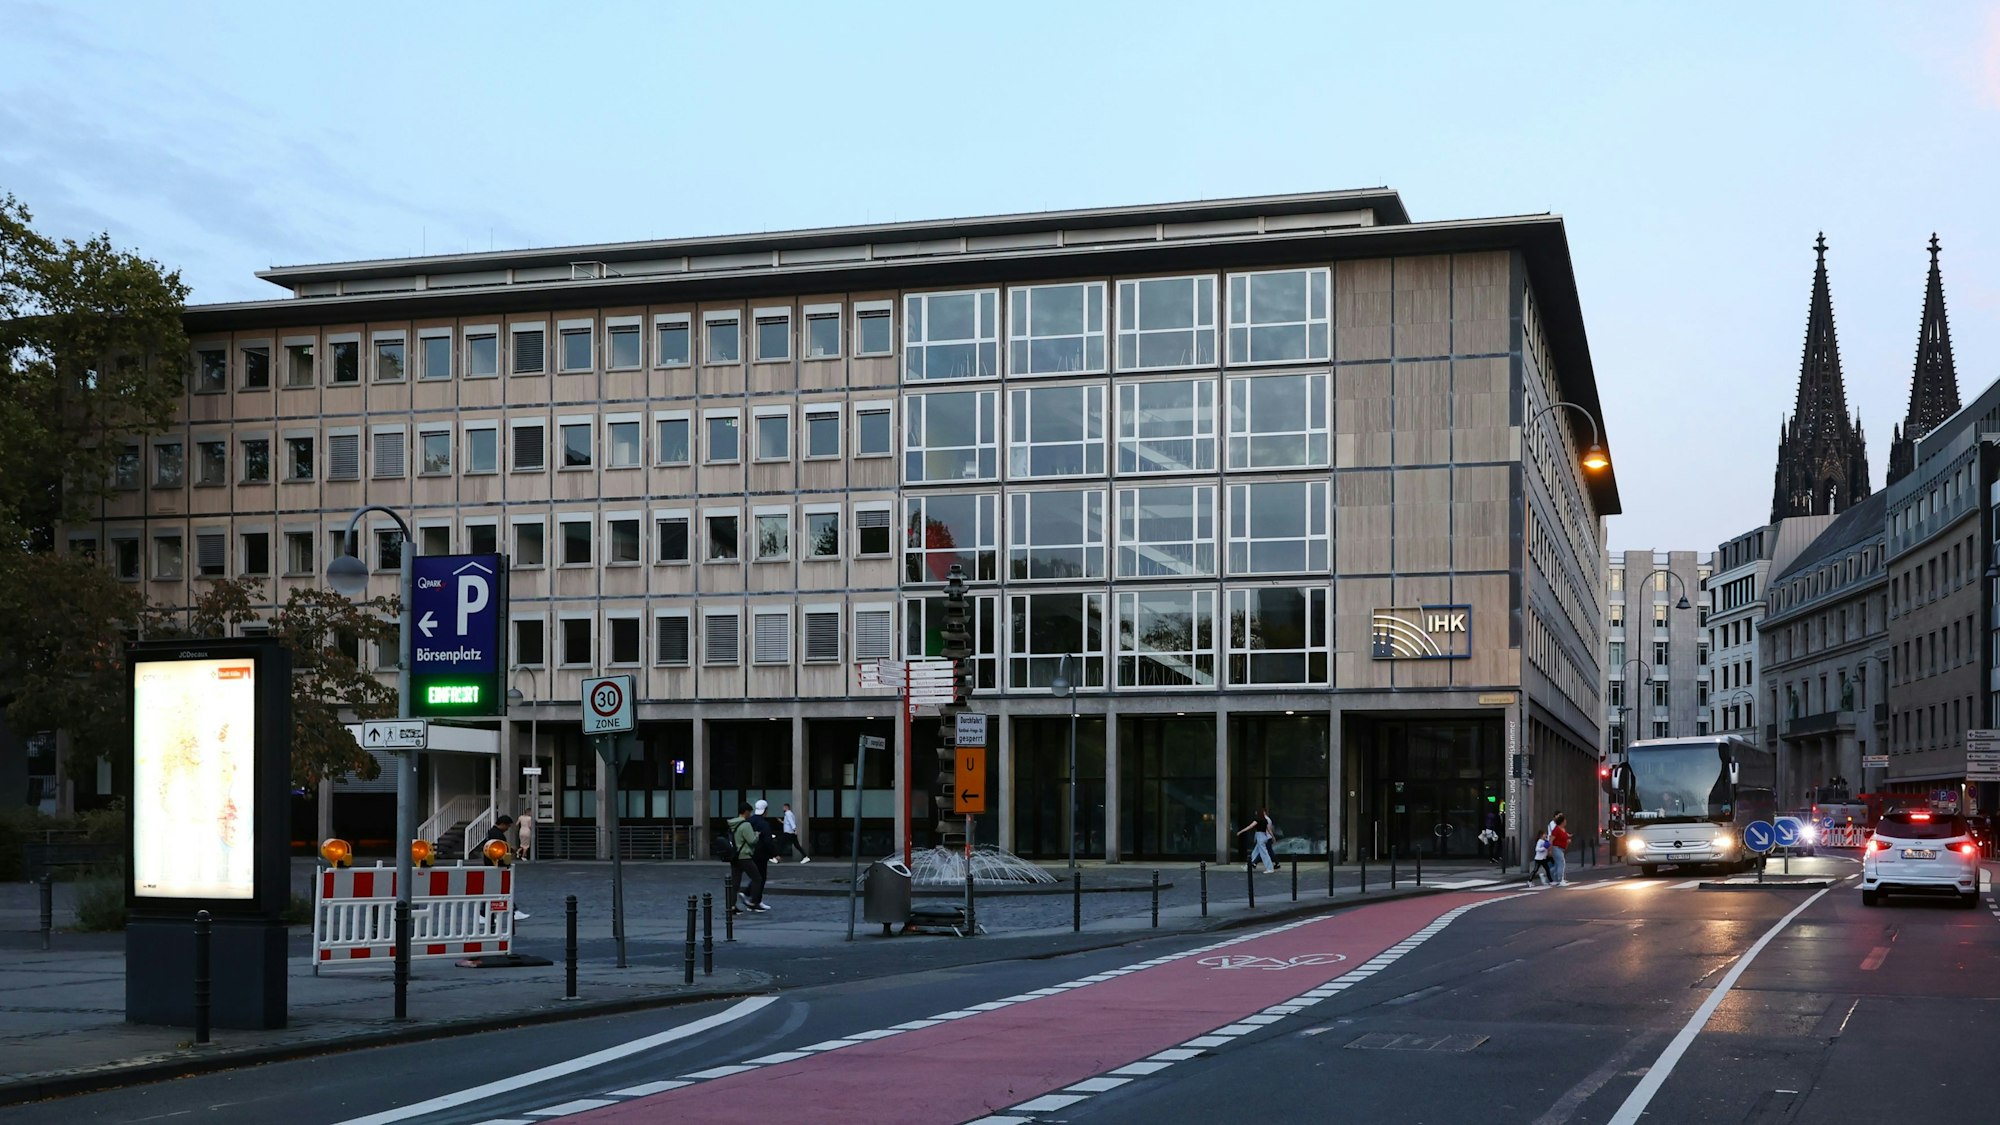 Das Gebäude der IHK Köln (Industrie- und Handelskammer) an der Straße „Unter Sachsenhausen“. Die IHK wird ihren Stammsitz bald wegen der Sanierung verlassen und für mehrere Jahre in ein Interim ziehen.
Unter Sachsenhausen 10